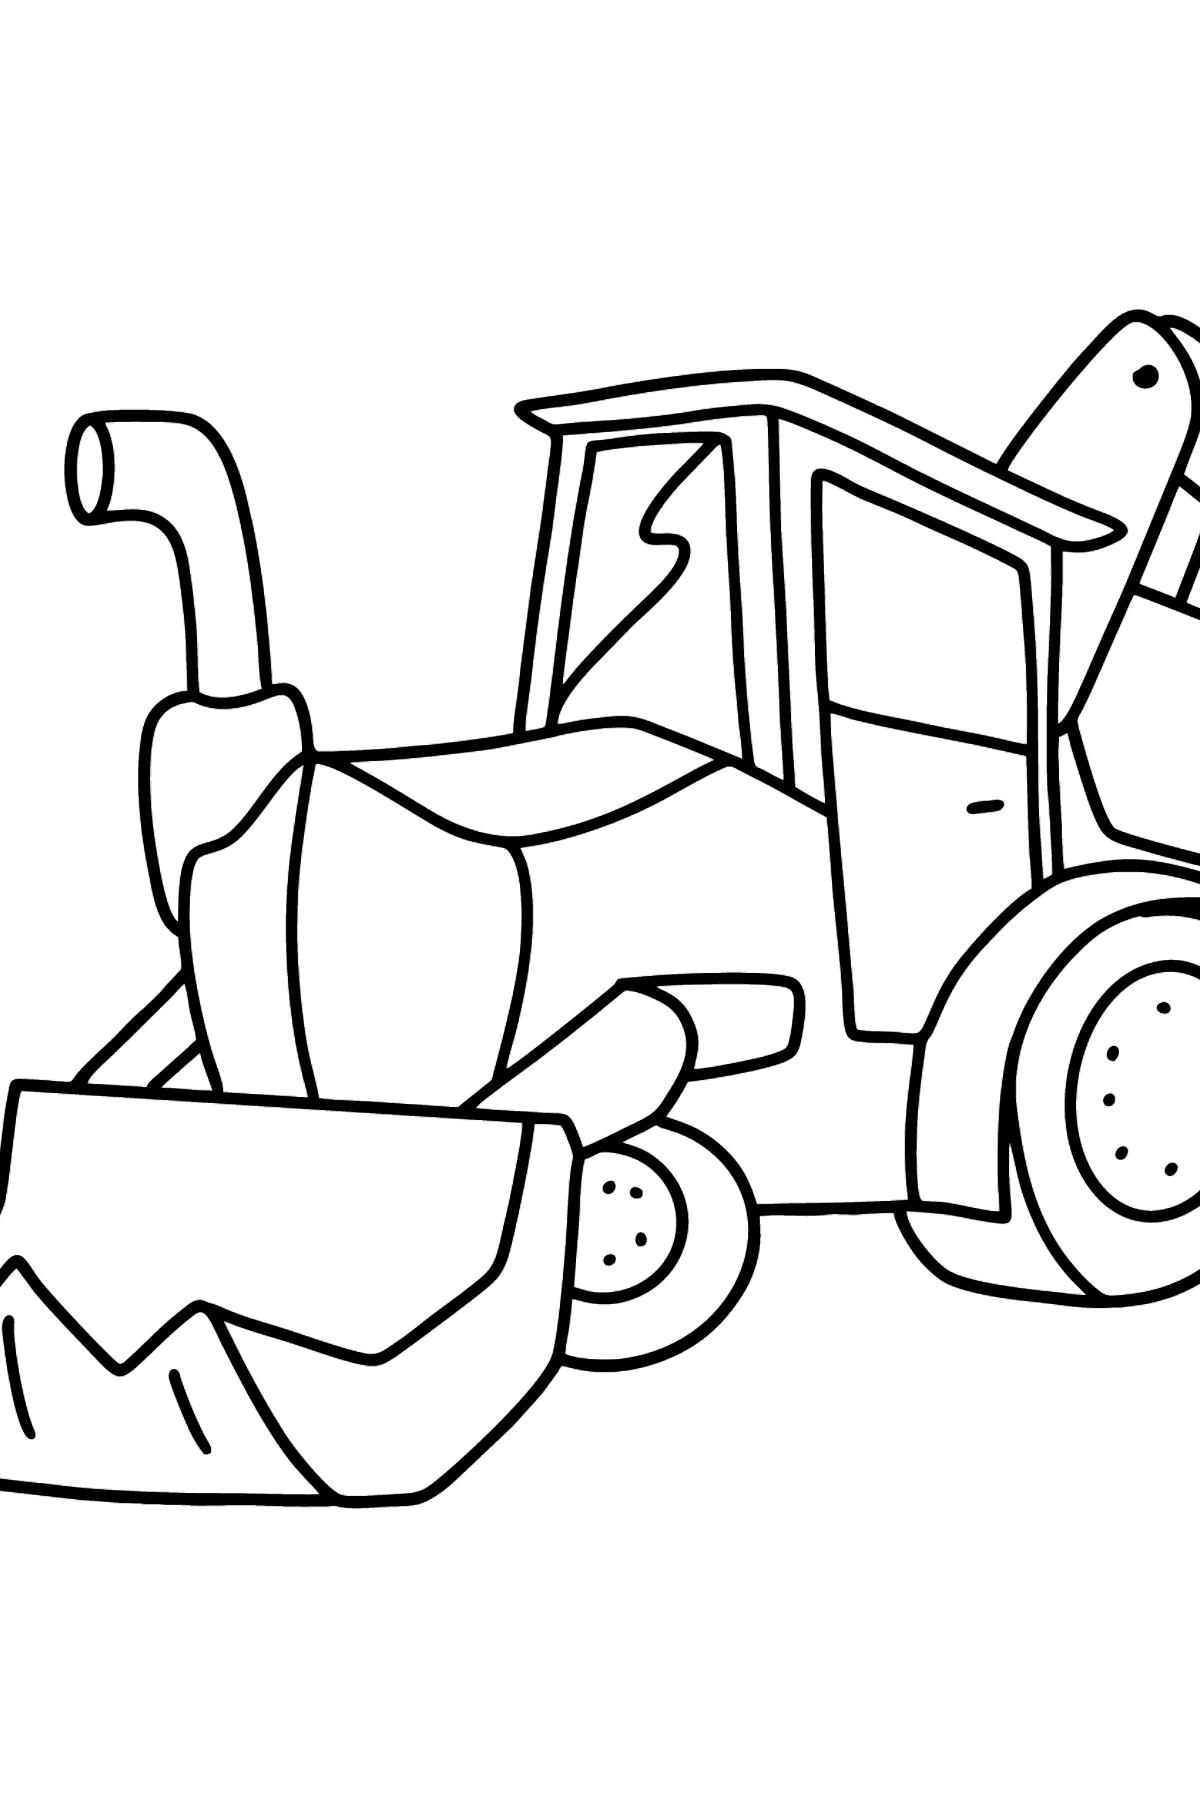 Раскраска трактор с двумя ковшами - Картинки для Детей